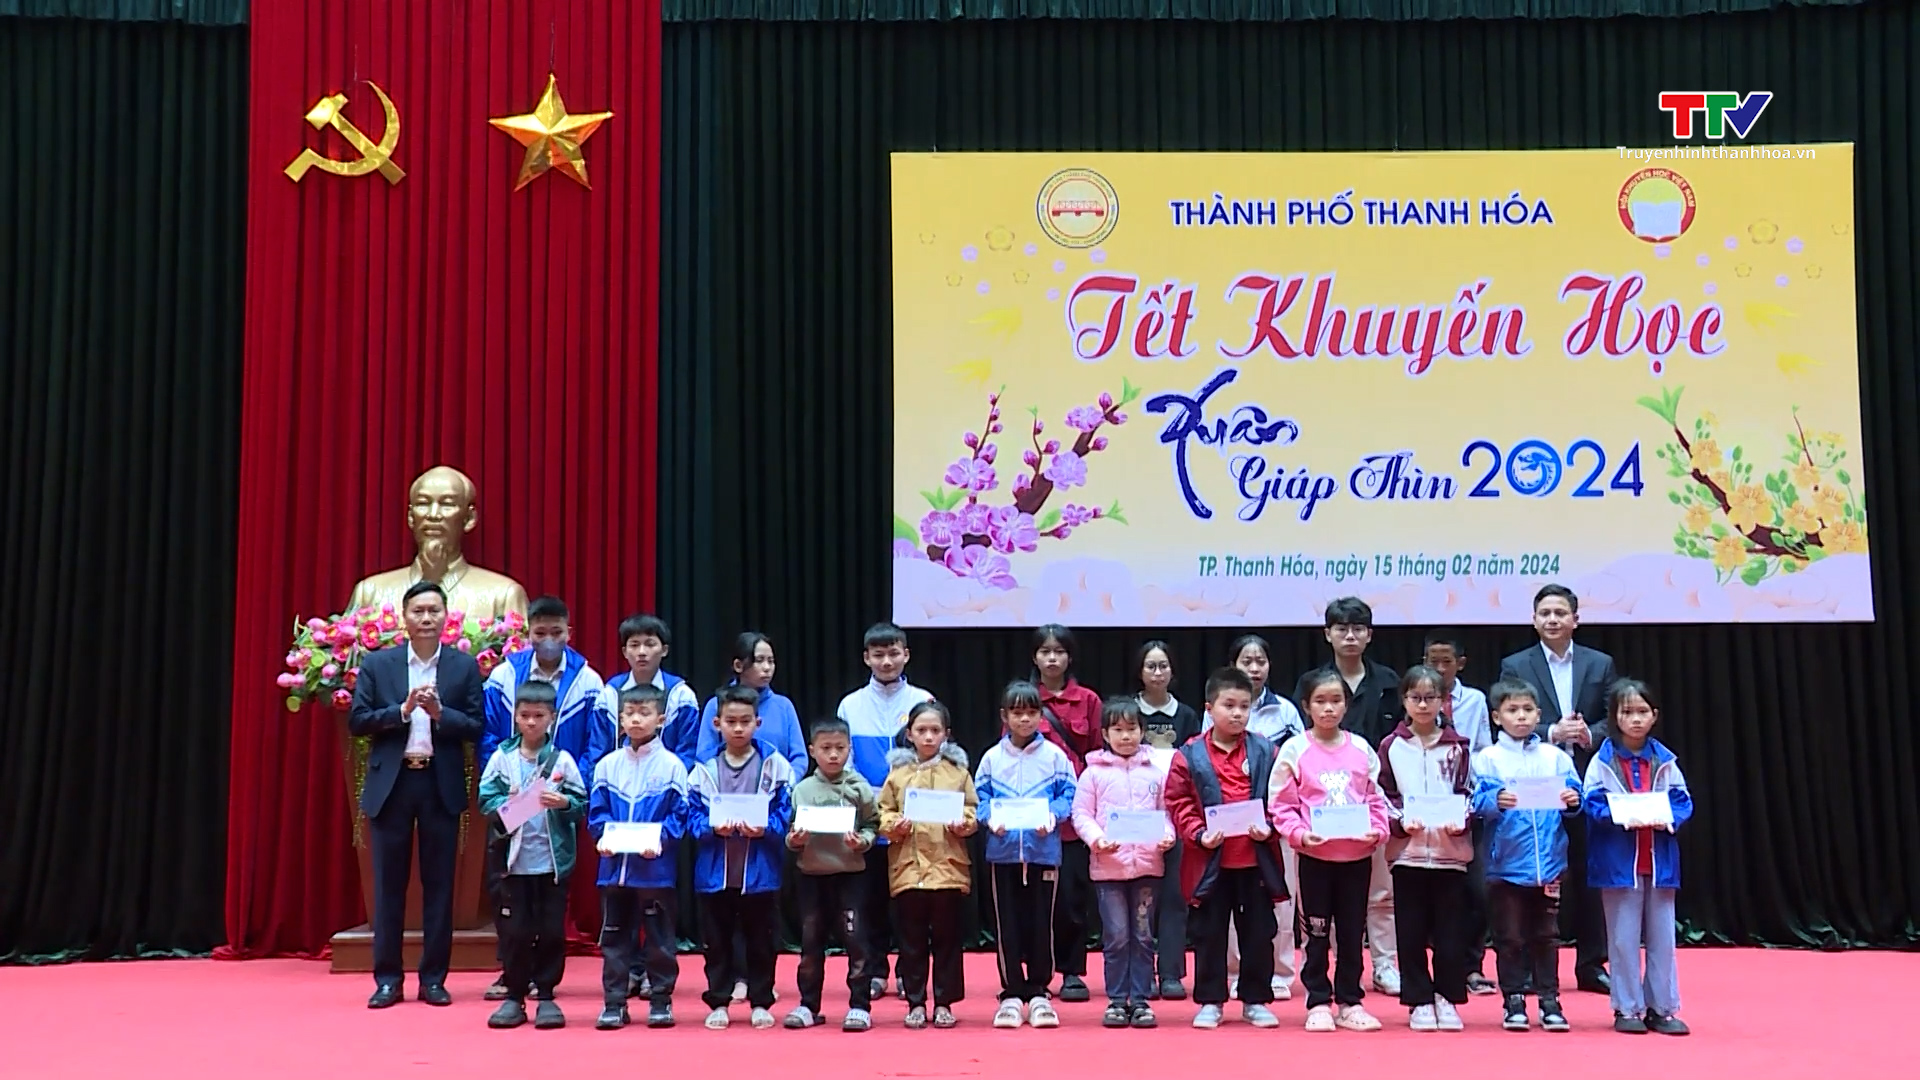 Thành phố Thanh Hóa tổ chức Tết khuyến học xuân Giáp Thìn 2024- Ảnh 3.